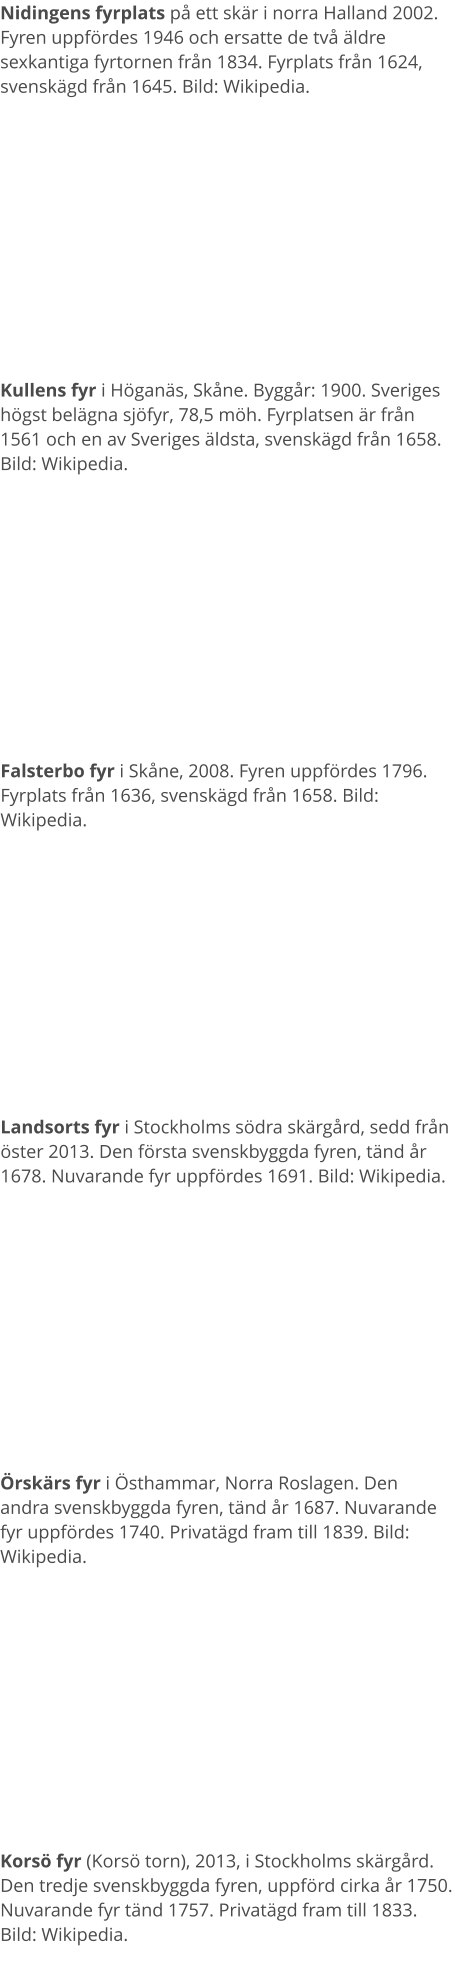 Nidingens fyrplats på ett skär i norra Halland 2002. Fyren uppfördes 1946 och ersatte de två äldre sexkantiga fyrtornen från 1834. Fyrplats från 1624, svenskägd från 1645. Bild: Wikipedia. Kullens fyr i Höganäs, Skåne. Byggår: 1900. Sveriges högst belägna sjöfyr, 78,5 möh. Fyrplatsen är från 1561 och en av Sveriges äldsta, svenskägd från 1658. Bild: Wikipedia. Falsterbo fyr i Skåne, 2008. Fyren uppfördes 1796. Fyrplats från 1636, svenskägd från 1658. Bild: Wikipedia. Landsorts fyr i Stockholms södra skärgård, sedd från öster 2013. Den första svenskbyggda fyren, tänd år 1678. Nuvarande fyr uppfördes 1691. Bild: Wikipedia. Örskärs fyr i Östhammar, Norra Roslagen. Den andra svenskbyggda fyren, tänd år 1687. Nuvarande fyr uppfördes 1740. Privatägd fram till 1839. Bild: Wikipedia. Korsö fyr (Korsö torn), 2013, i Stockholms skärgård. Den tredje svenskbyggda fyren, uppförd cirka år 1750. Nuvarande fyr tänd 1757. Privatägd fram till 1833. Bild: Wikipedia.